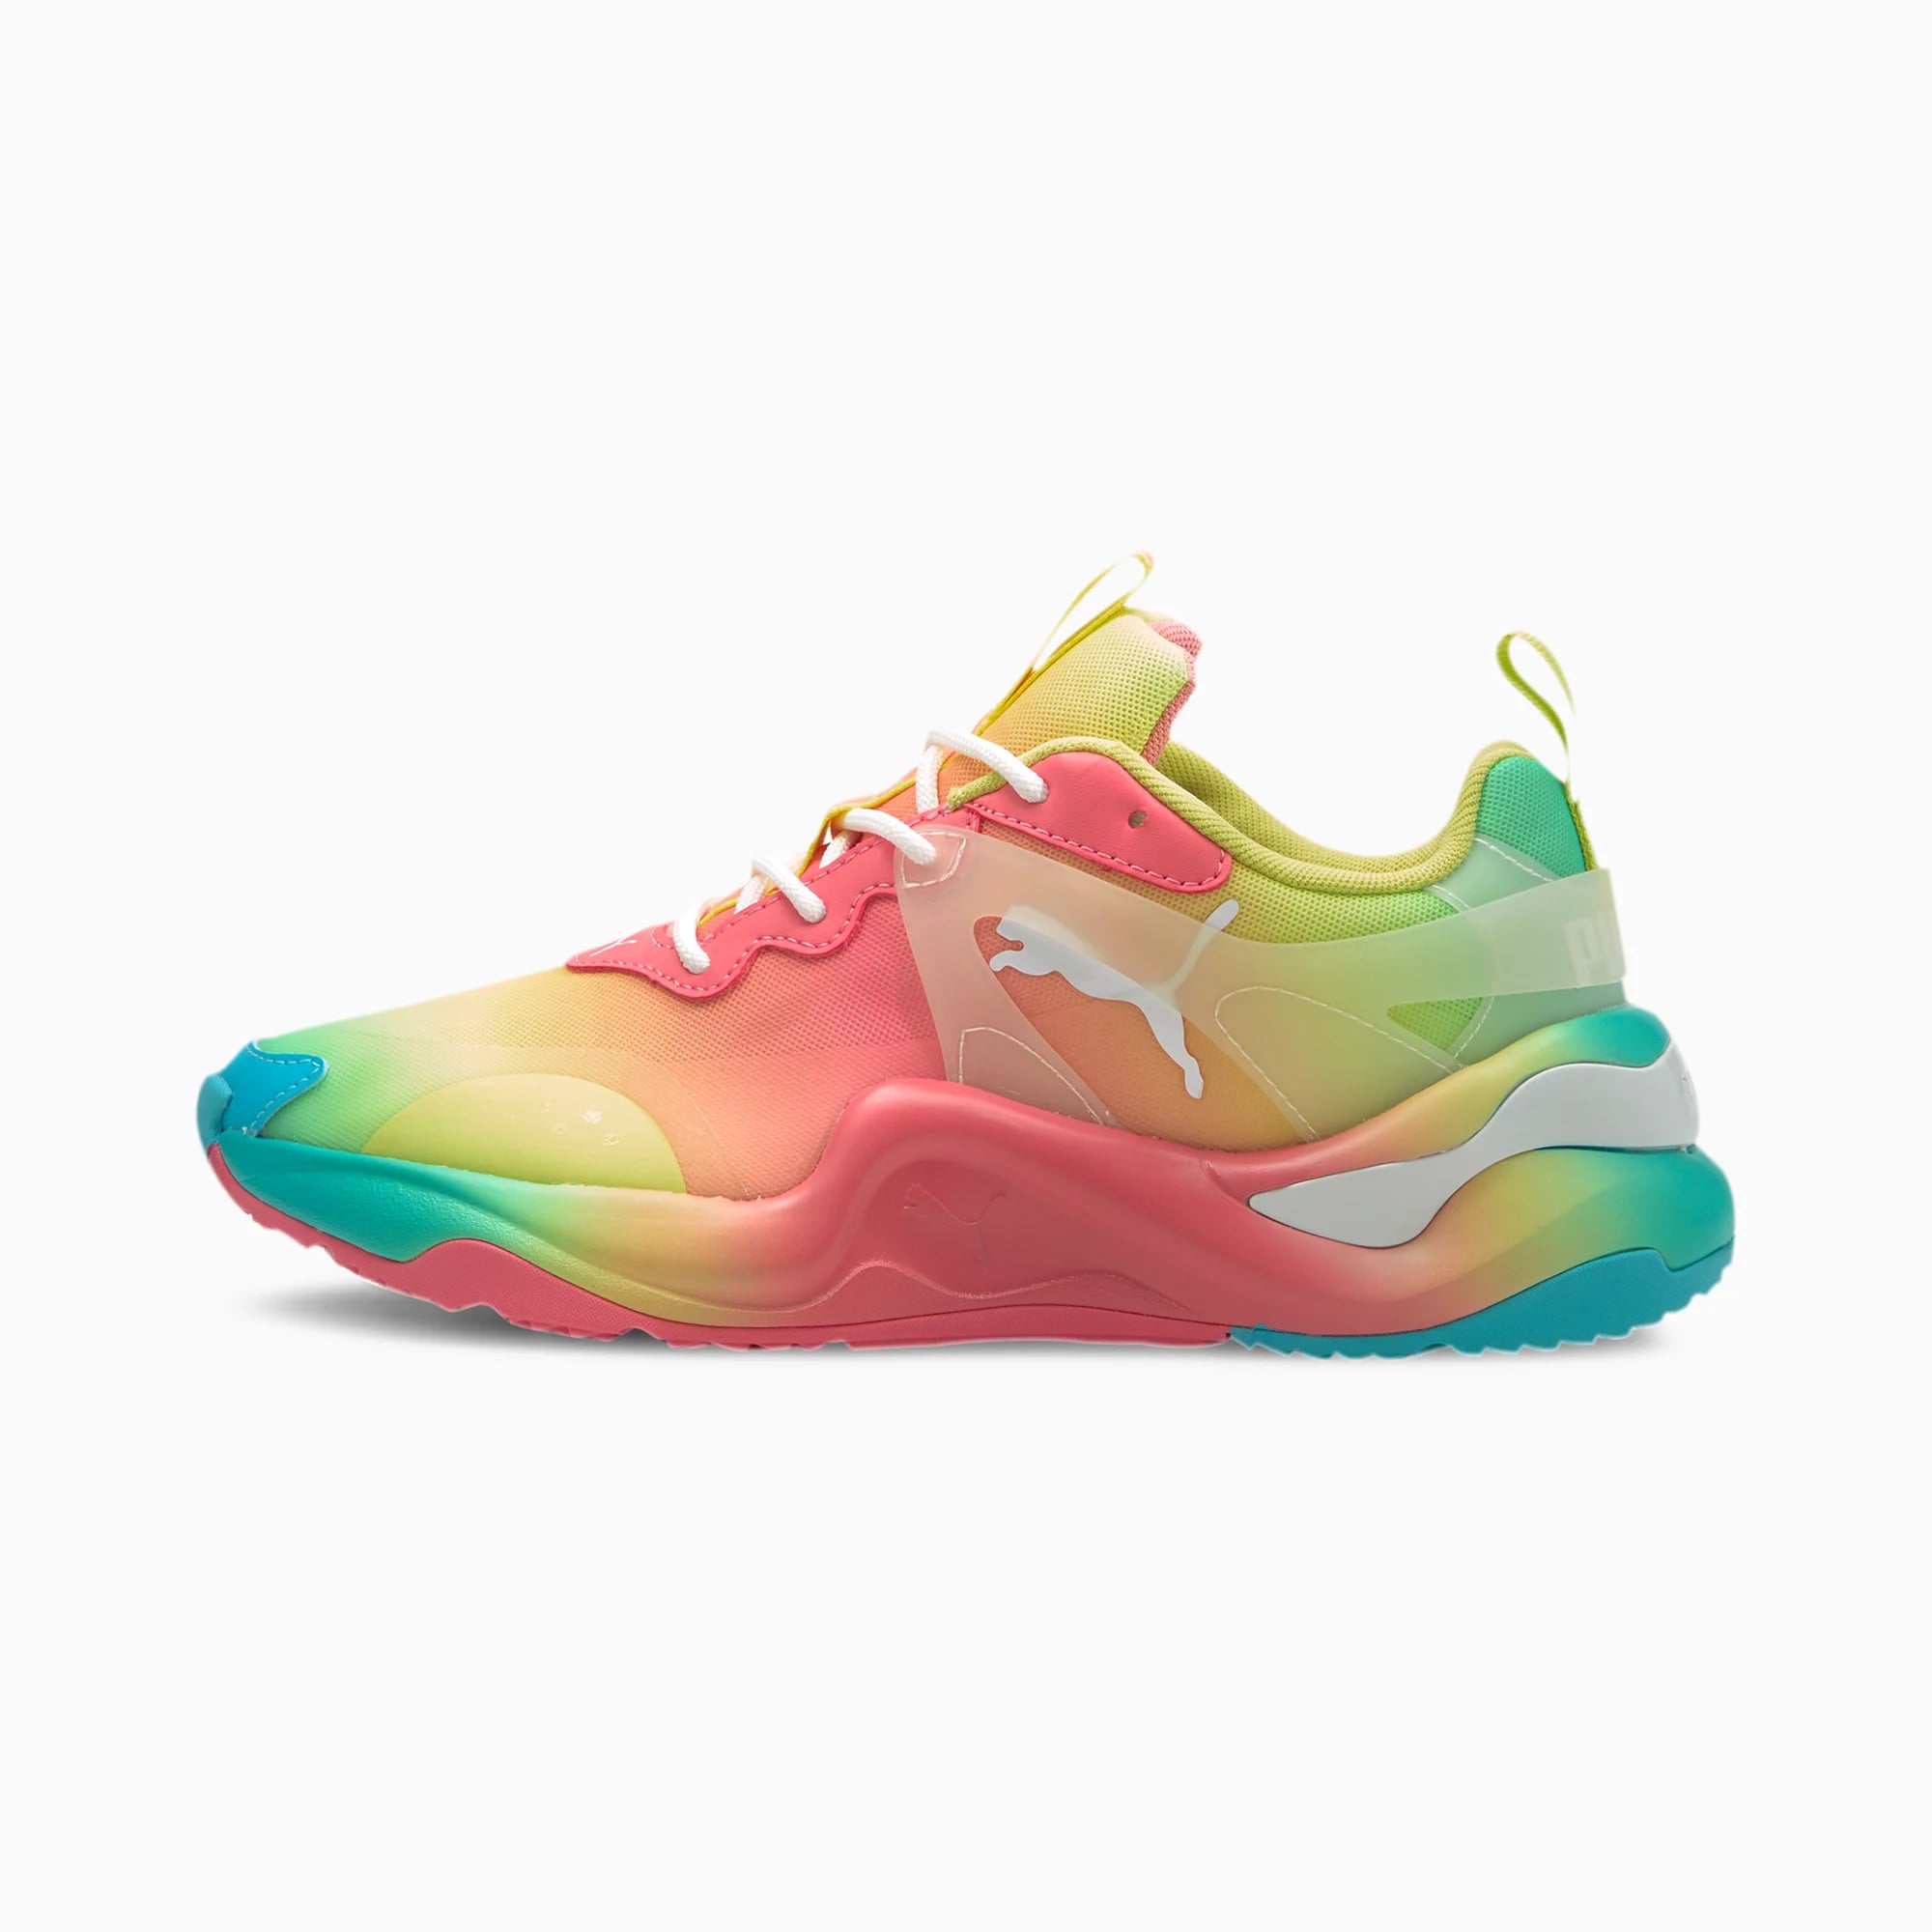 puma colourful shoes